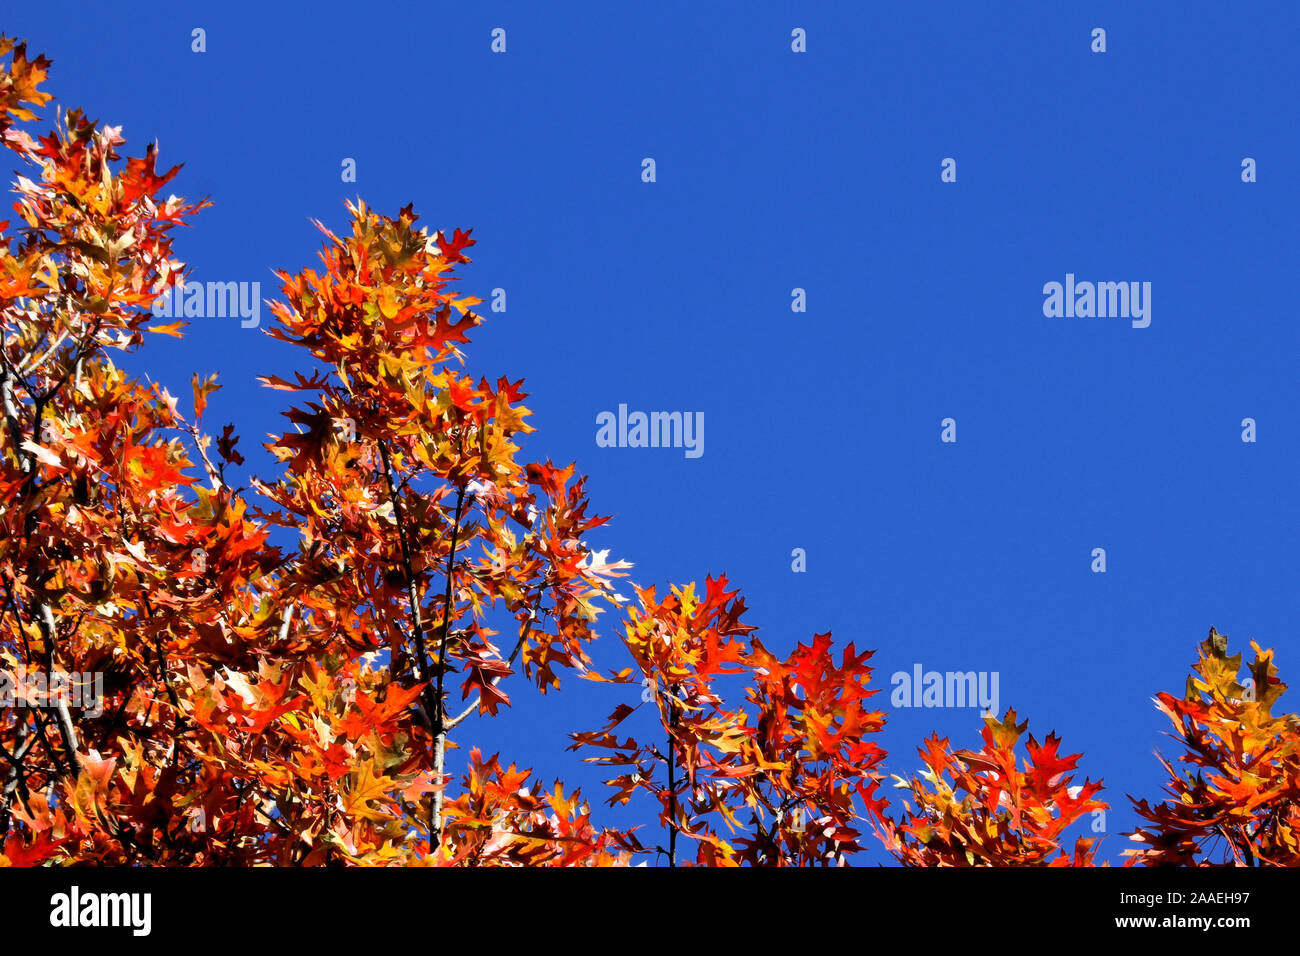 Perno albero di quercia rami con colorate Foglie di autunno si stagliano contro un cielo blu. Foto Stock